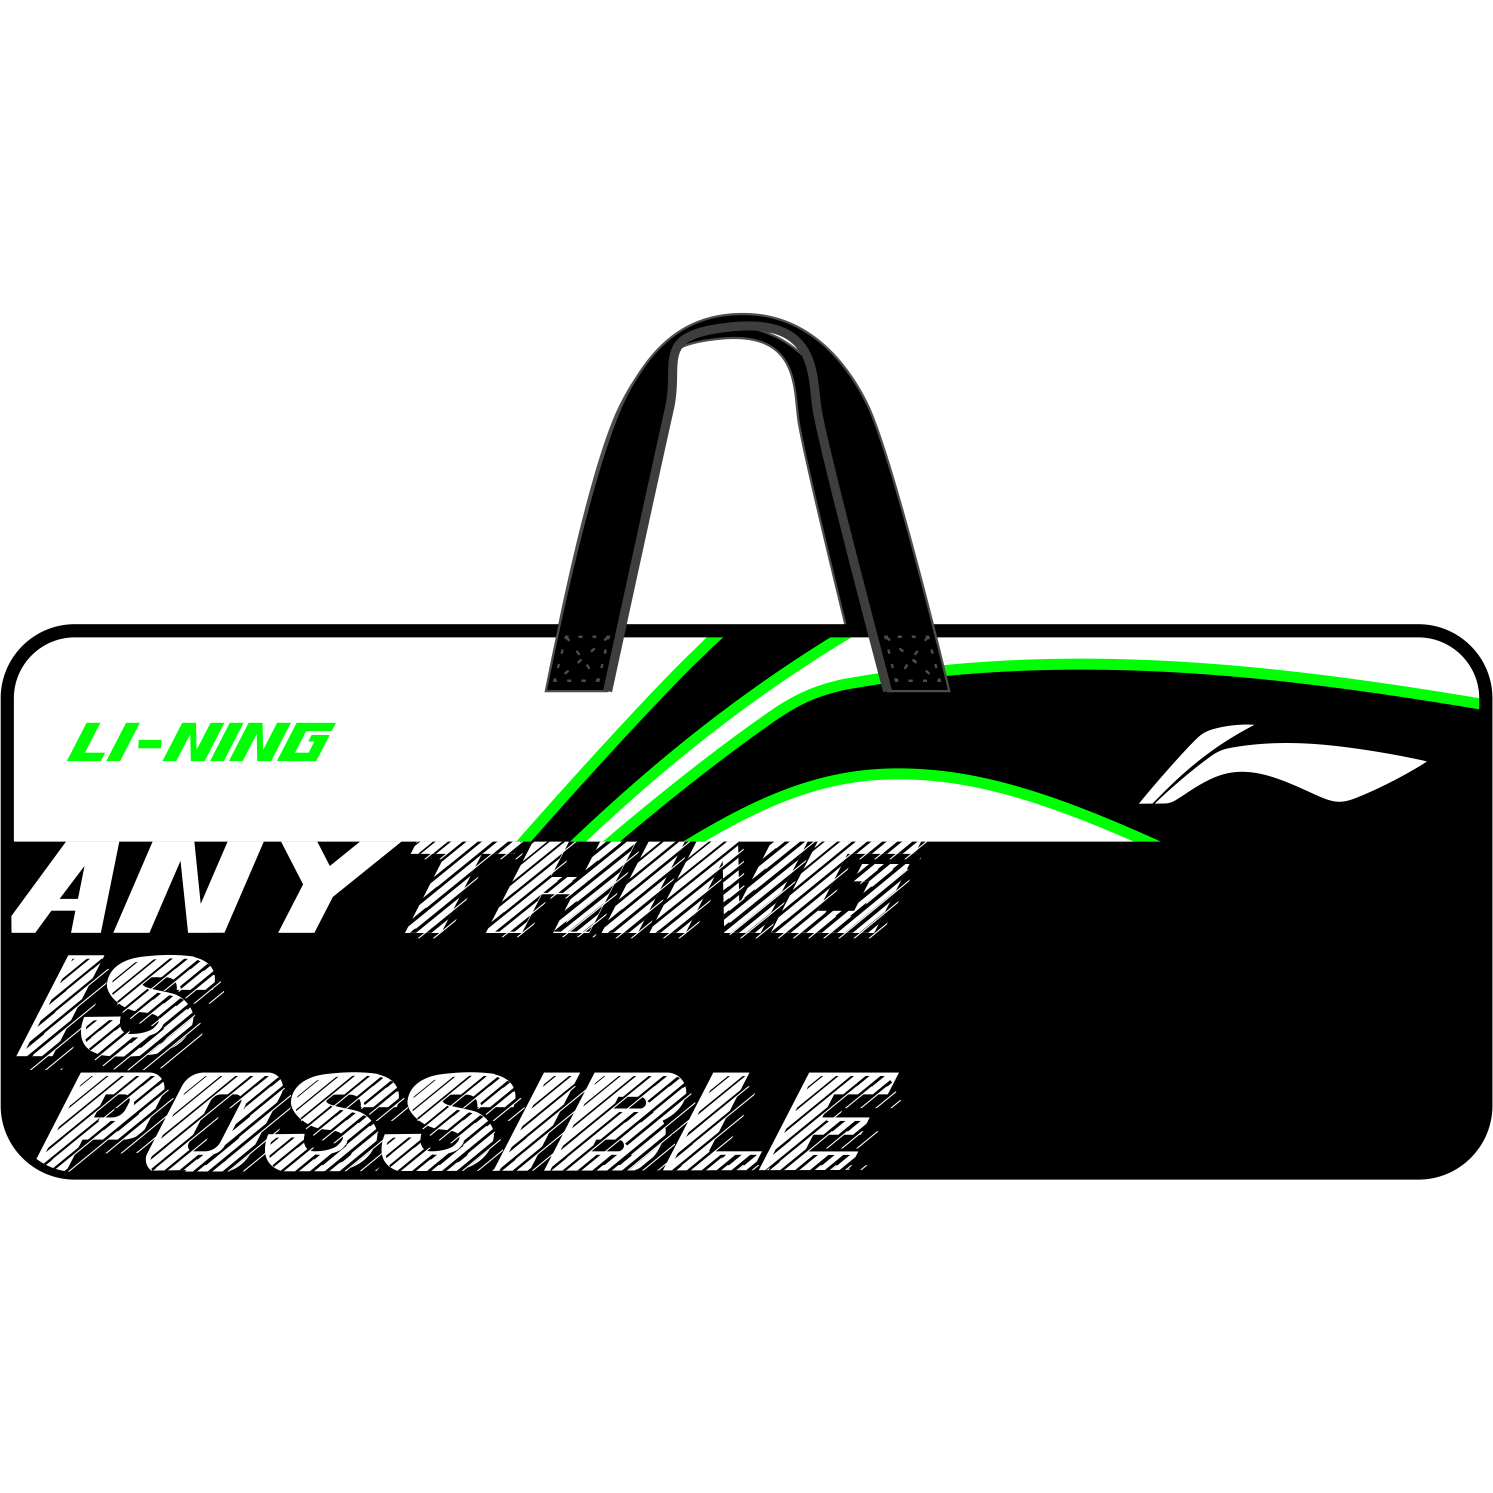 Li-Ning International Player Badminton Bag ABJS0571  - Black